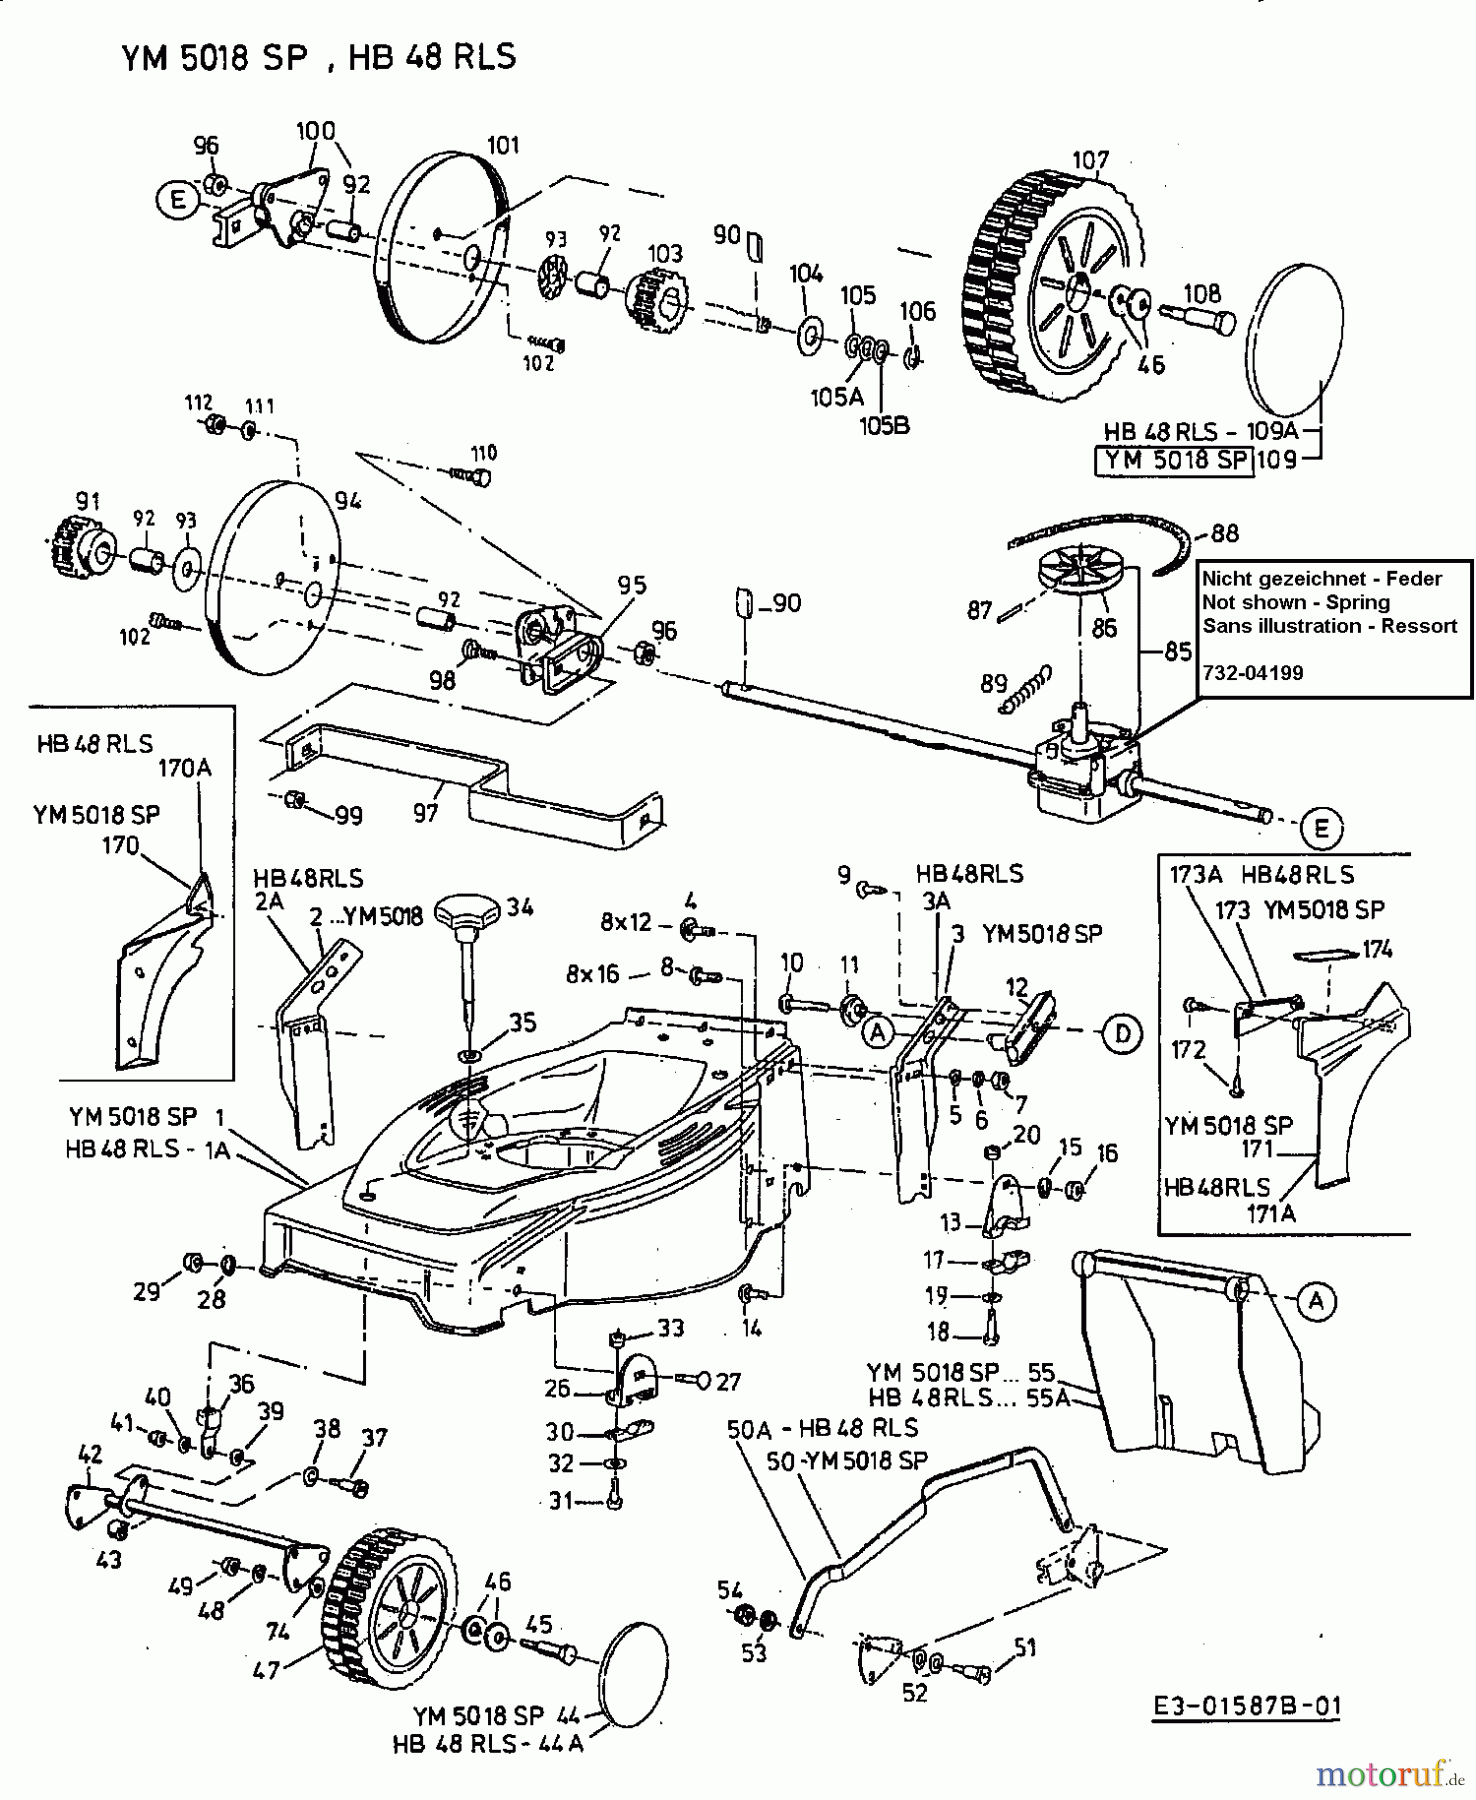  Gutbrod Motormäher mit Antrieb HB 48 RLS 12C-T78X690  (2002) Grundgerät